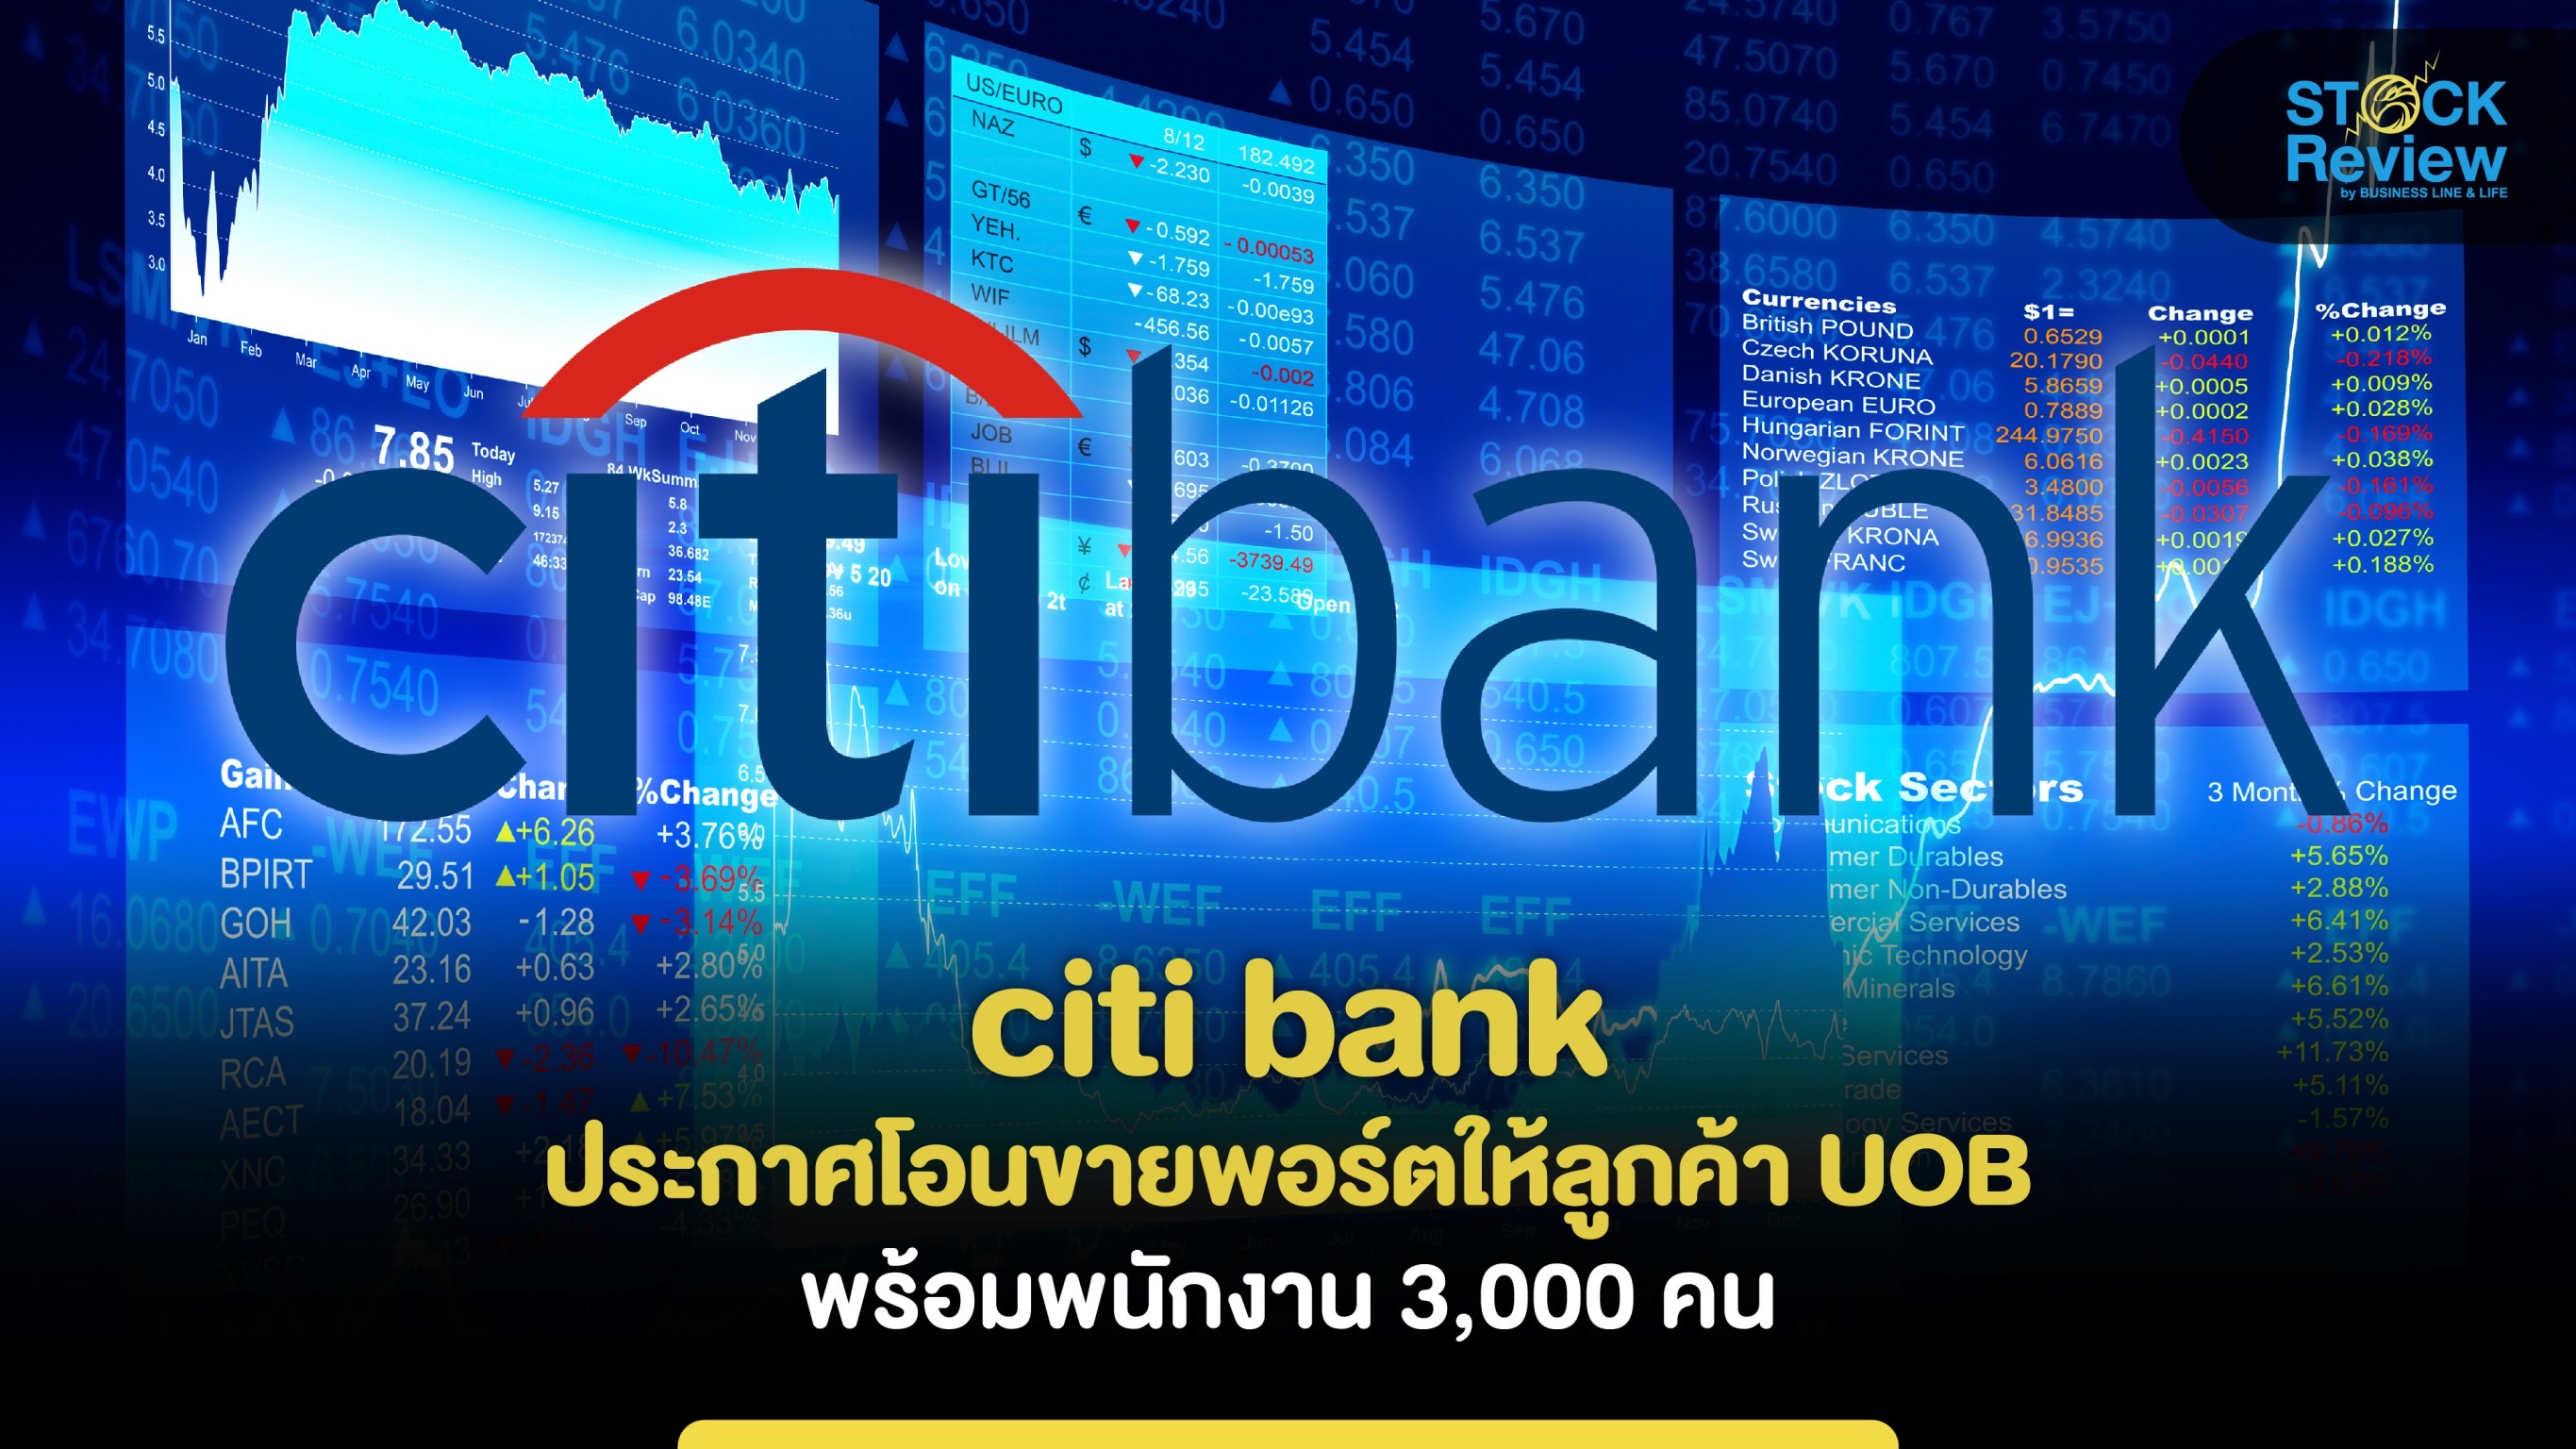 citi bank ประกาศโอนขายพอร์ตให้ลูกค้า UOB พร้อมพนักงาน 3,000 คน